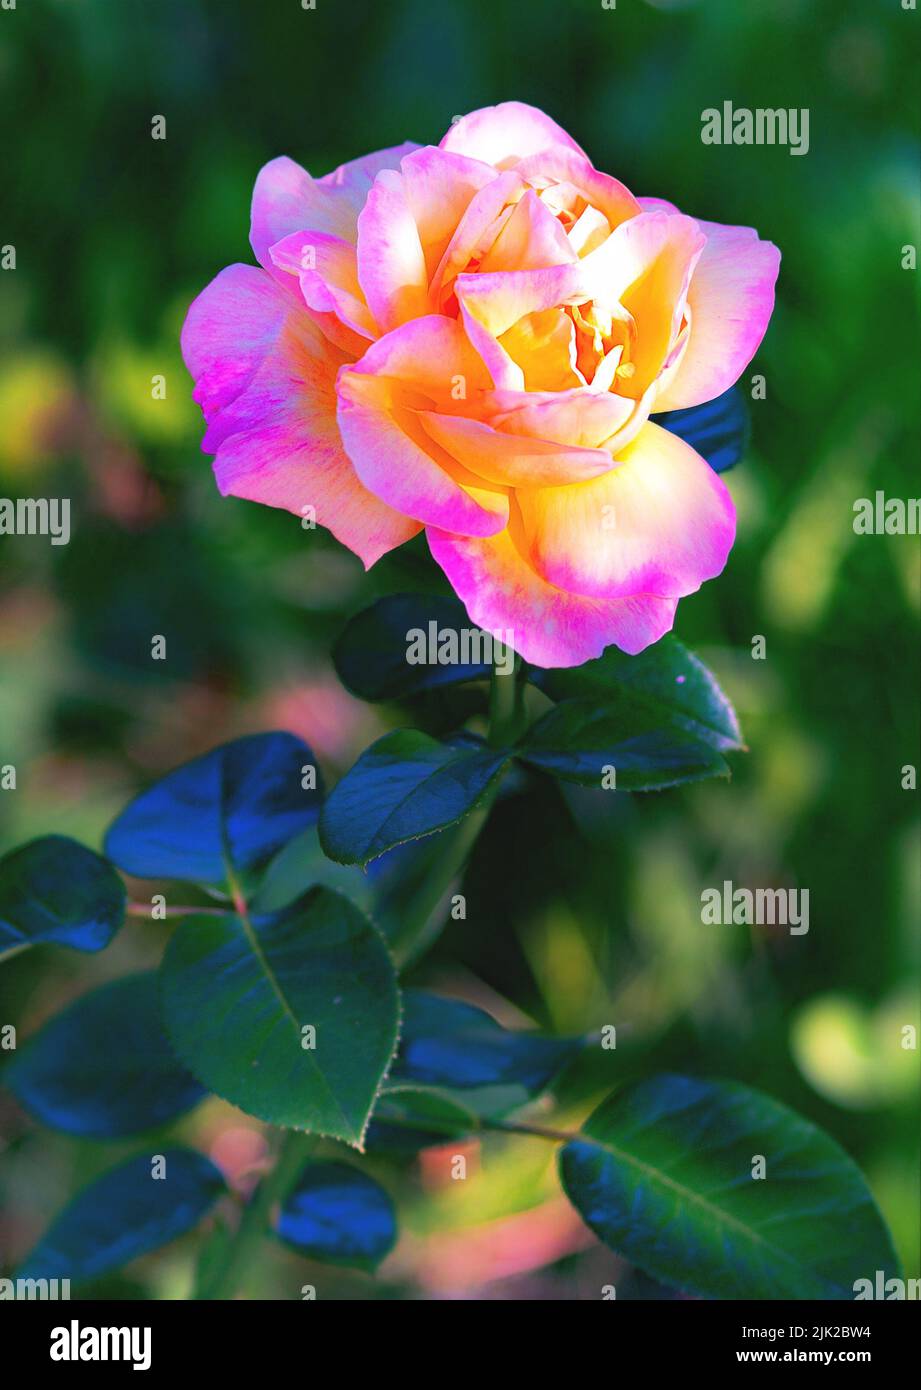 Hybrid Tea Rose, colorful garden flower Stock Photo